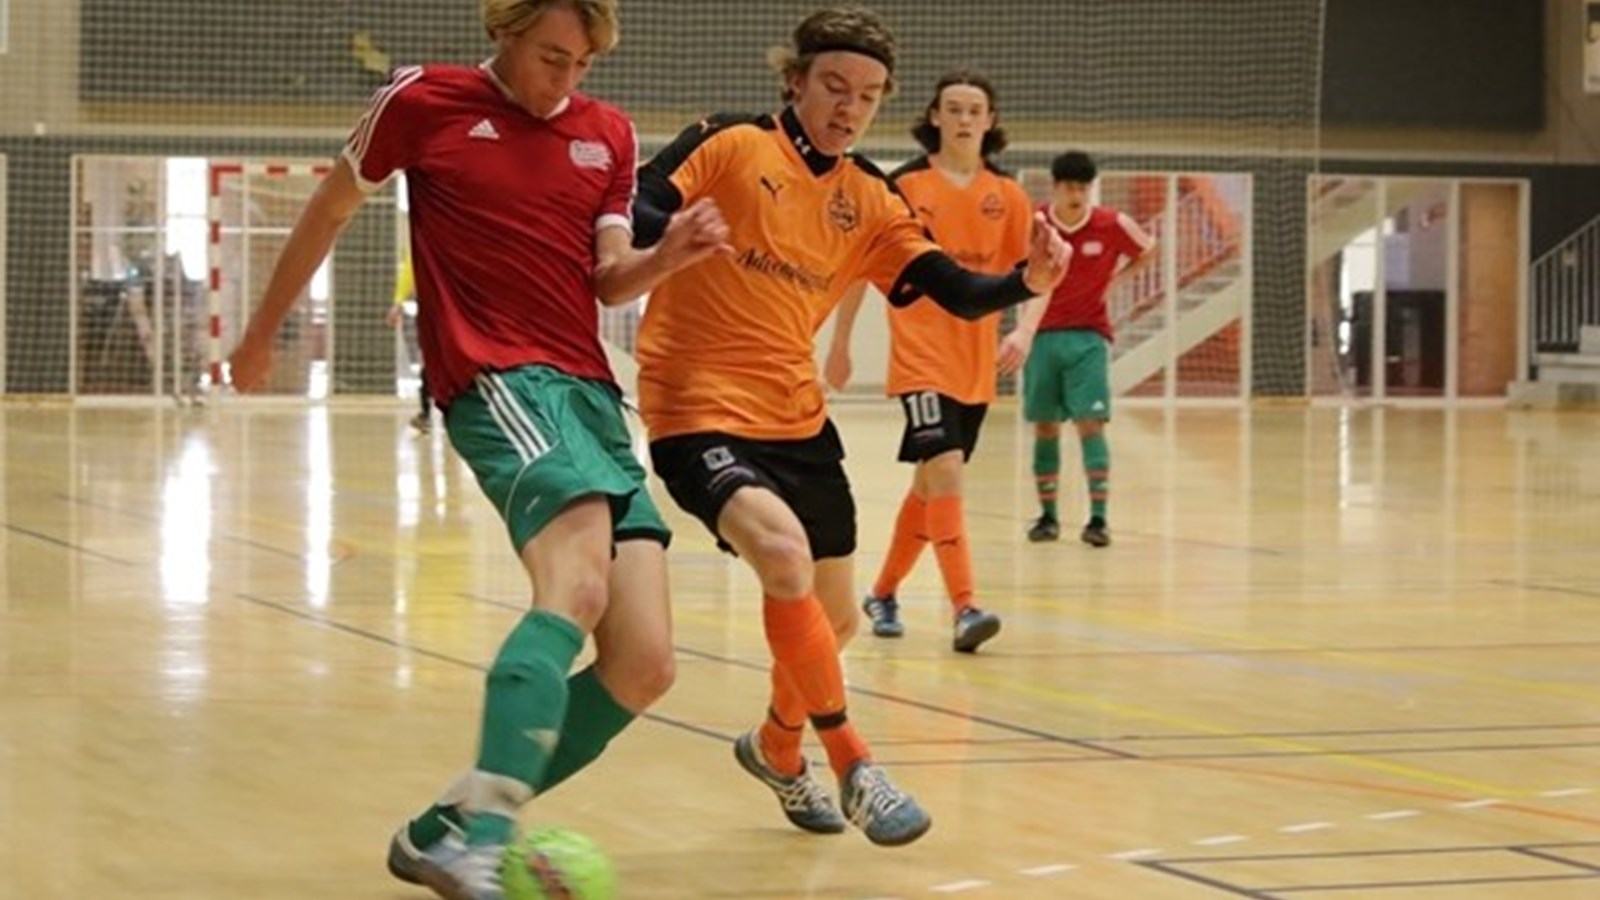 Futsalturneringerne i ungdom og senior skifter form på Fyn